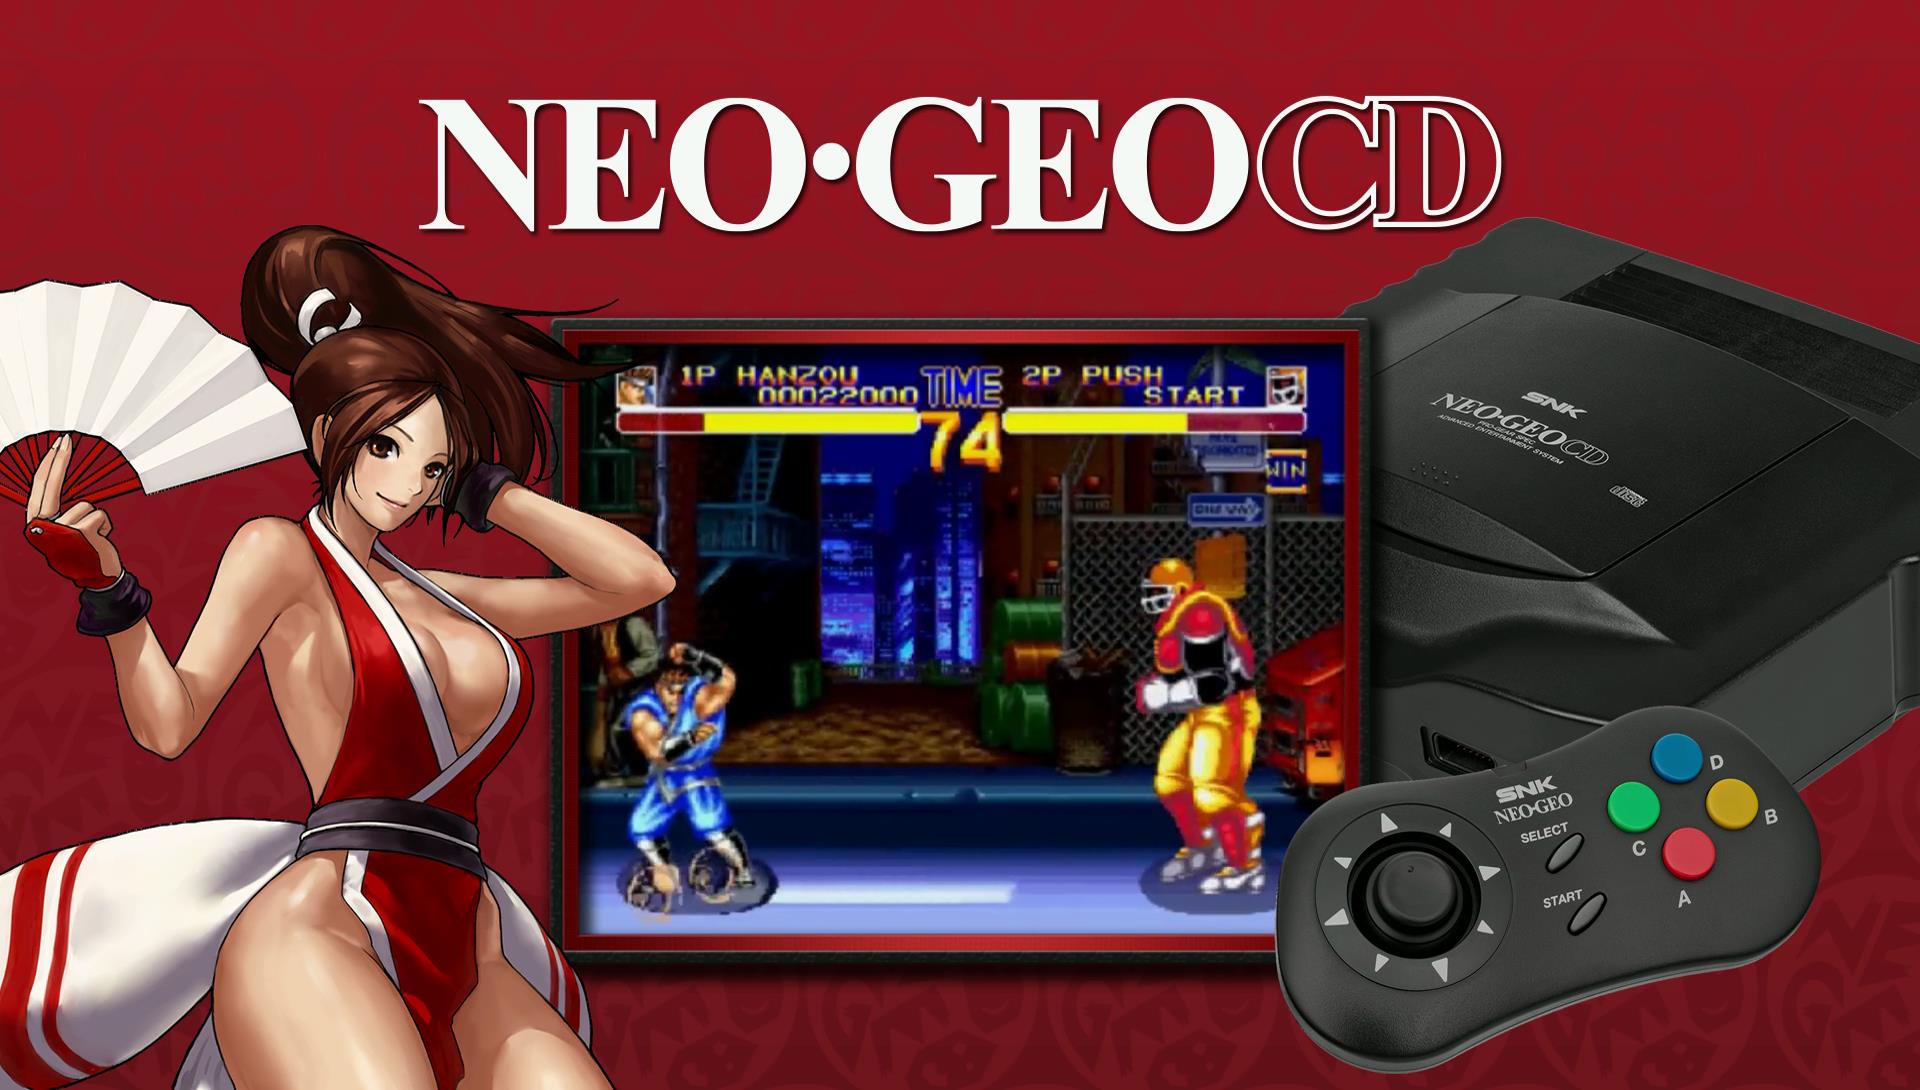 Ardor gaming ally 512. SNK Neo geo. Neo geo CD. Neo geo игры. Файтинги Neo-geo.